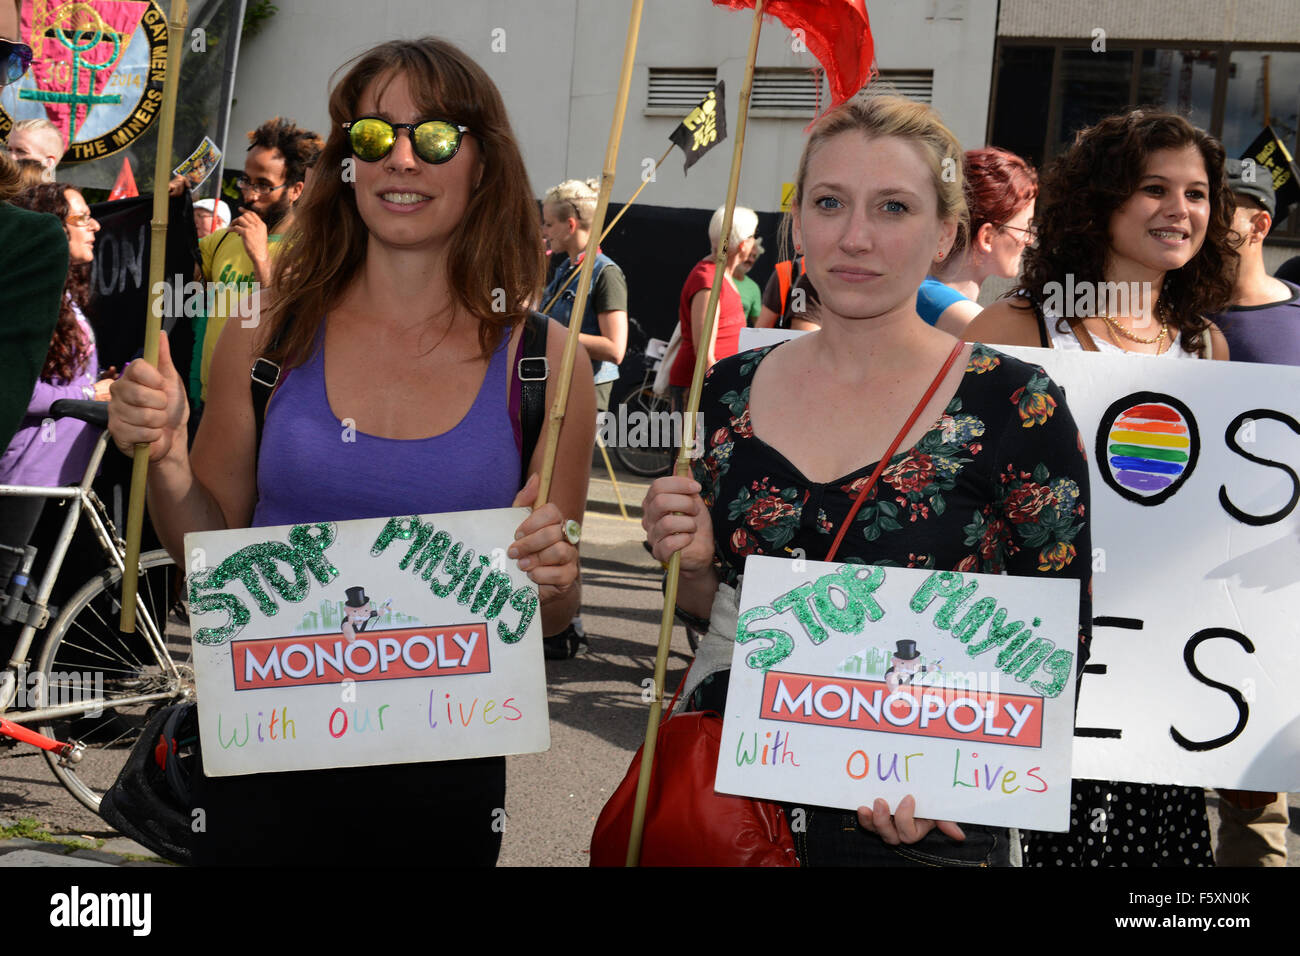 Die Kampagnengruppe Fokus E15 führt eine Demonstration in Newham, London, gegen Zwangsräumungen, während die Forderung nach mehr bezahlbaren Wohnraum für alle Featuring: Atmosphäre wo: London, Vereinigtes Königreich bei: 19 Sep 2015 Stockfoto